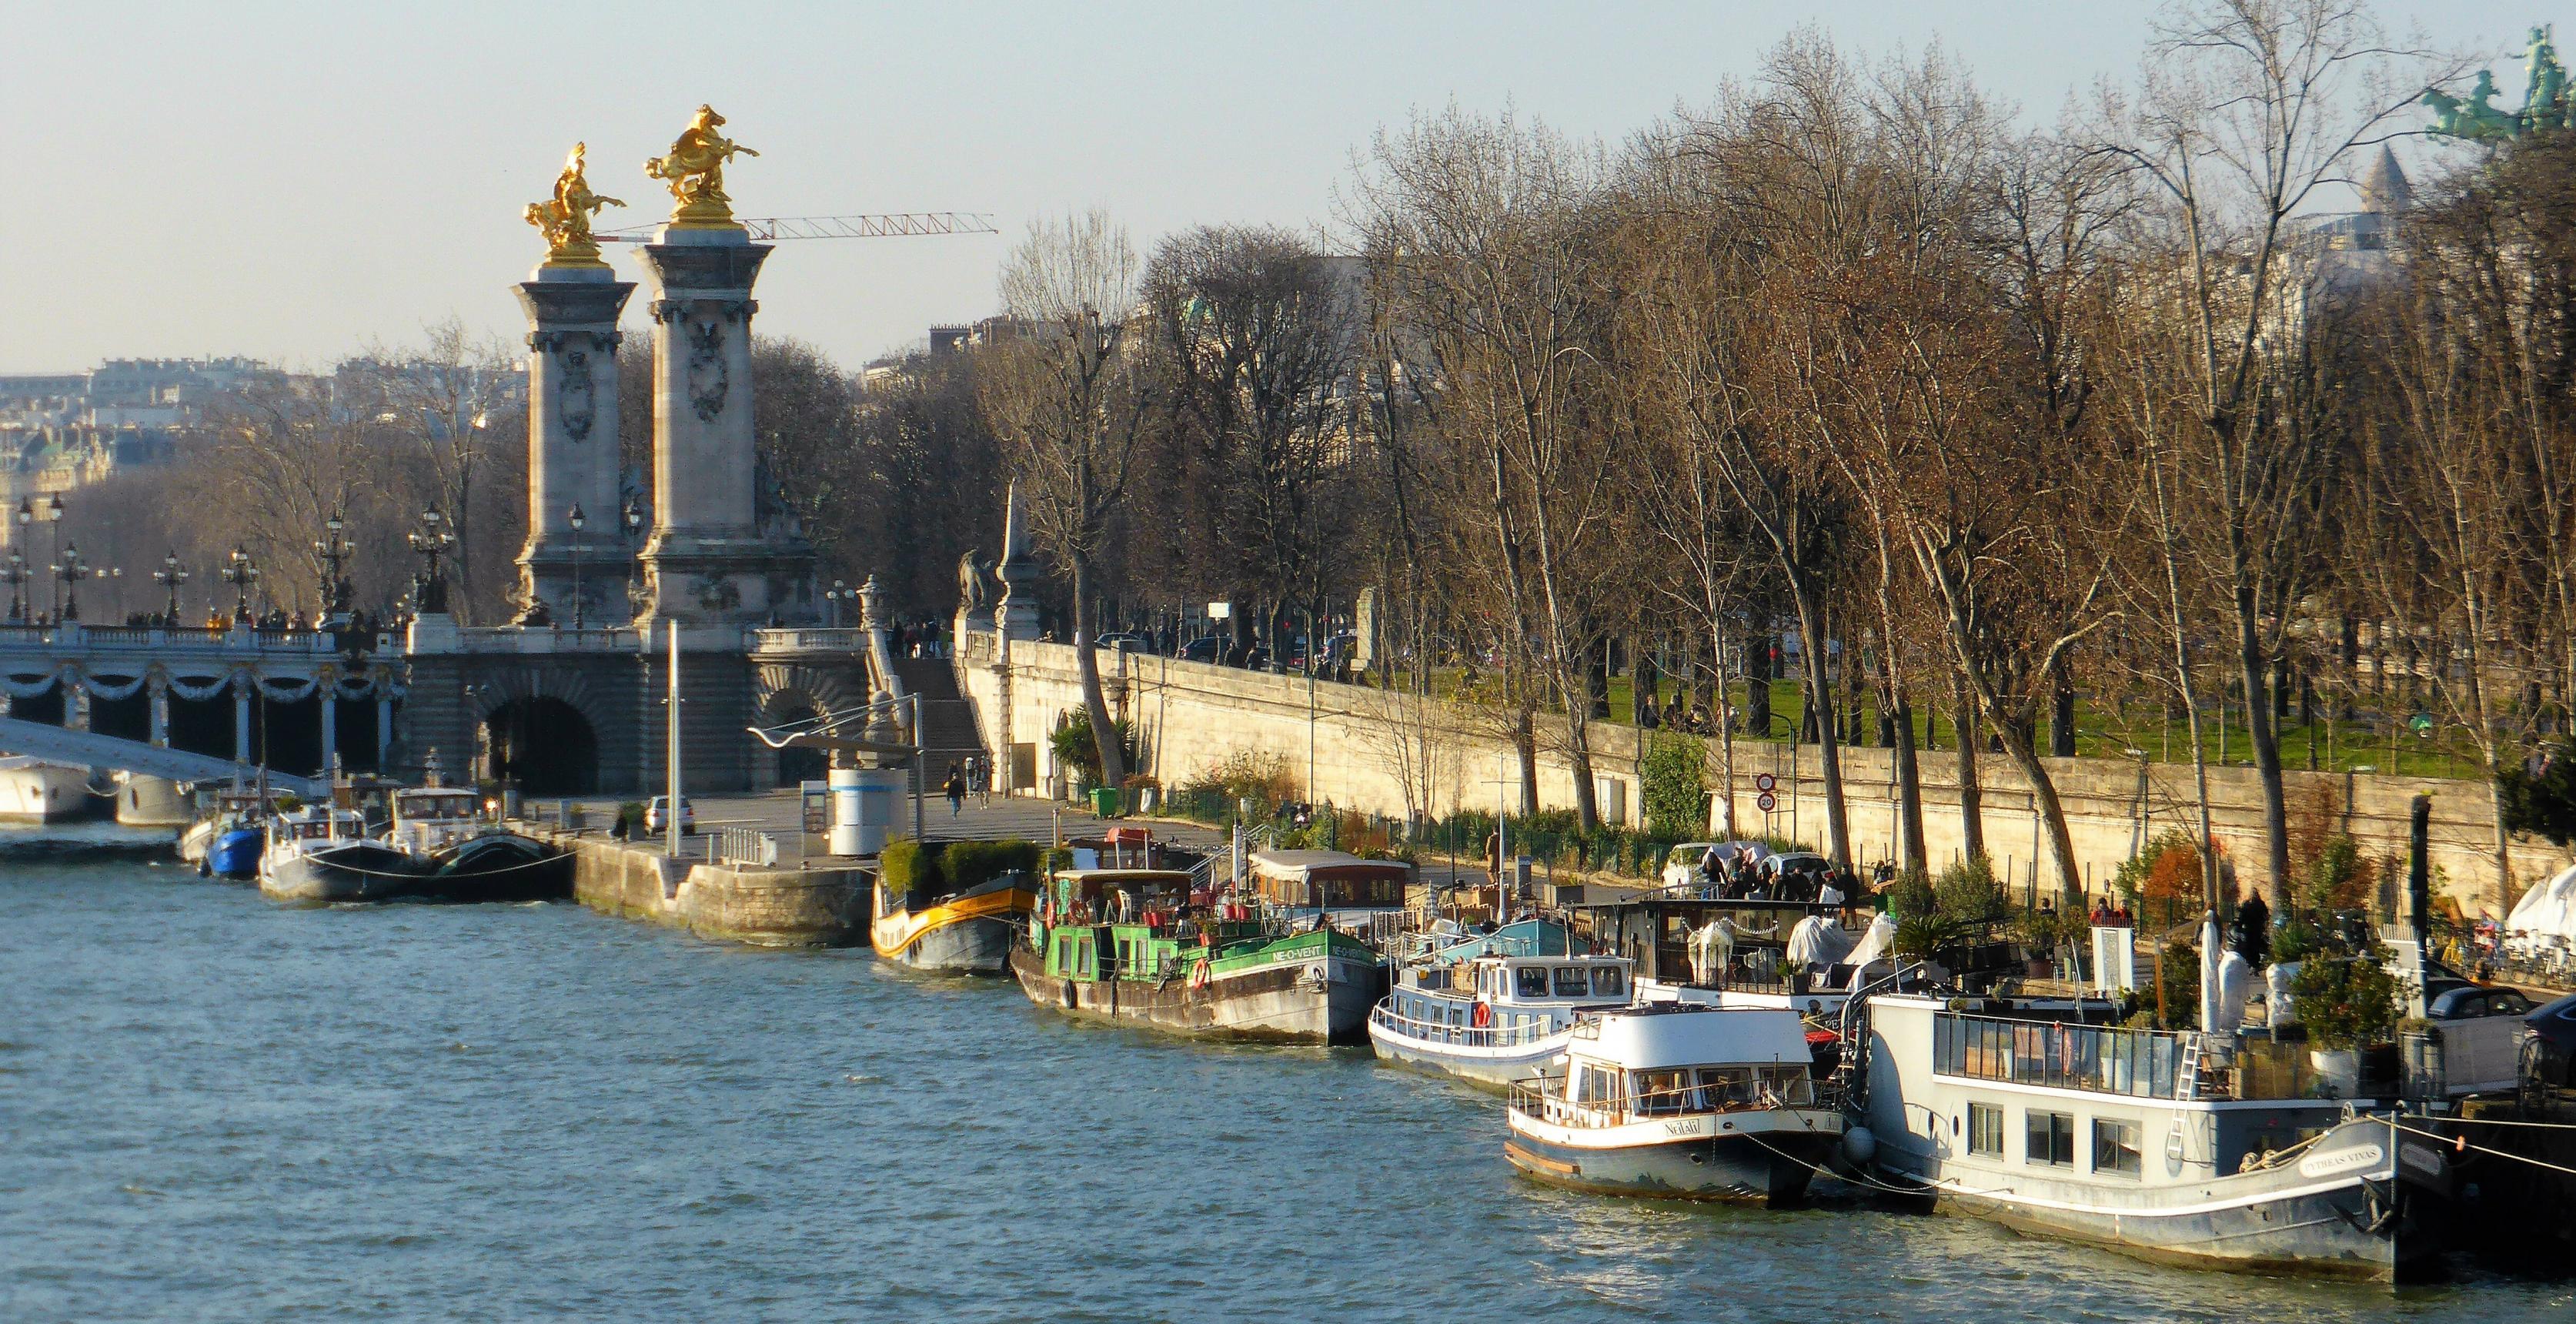 Vor dem neobarocken Brückenkopf oberhalb des Seine-Wassers dümpeln knapp ein Dutzend Boote am von der Sonnen strahlend ausgeleuchteten Flussufer.